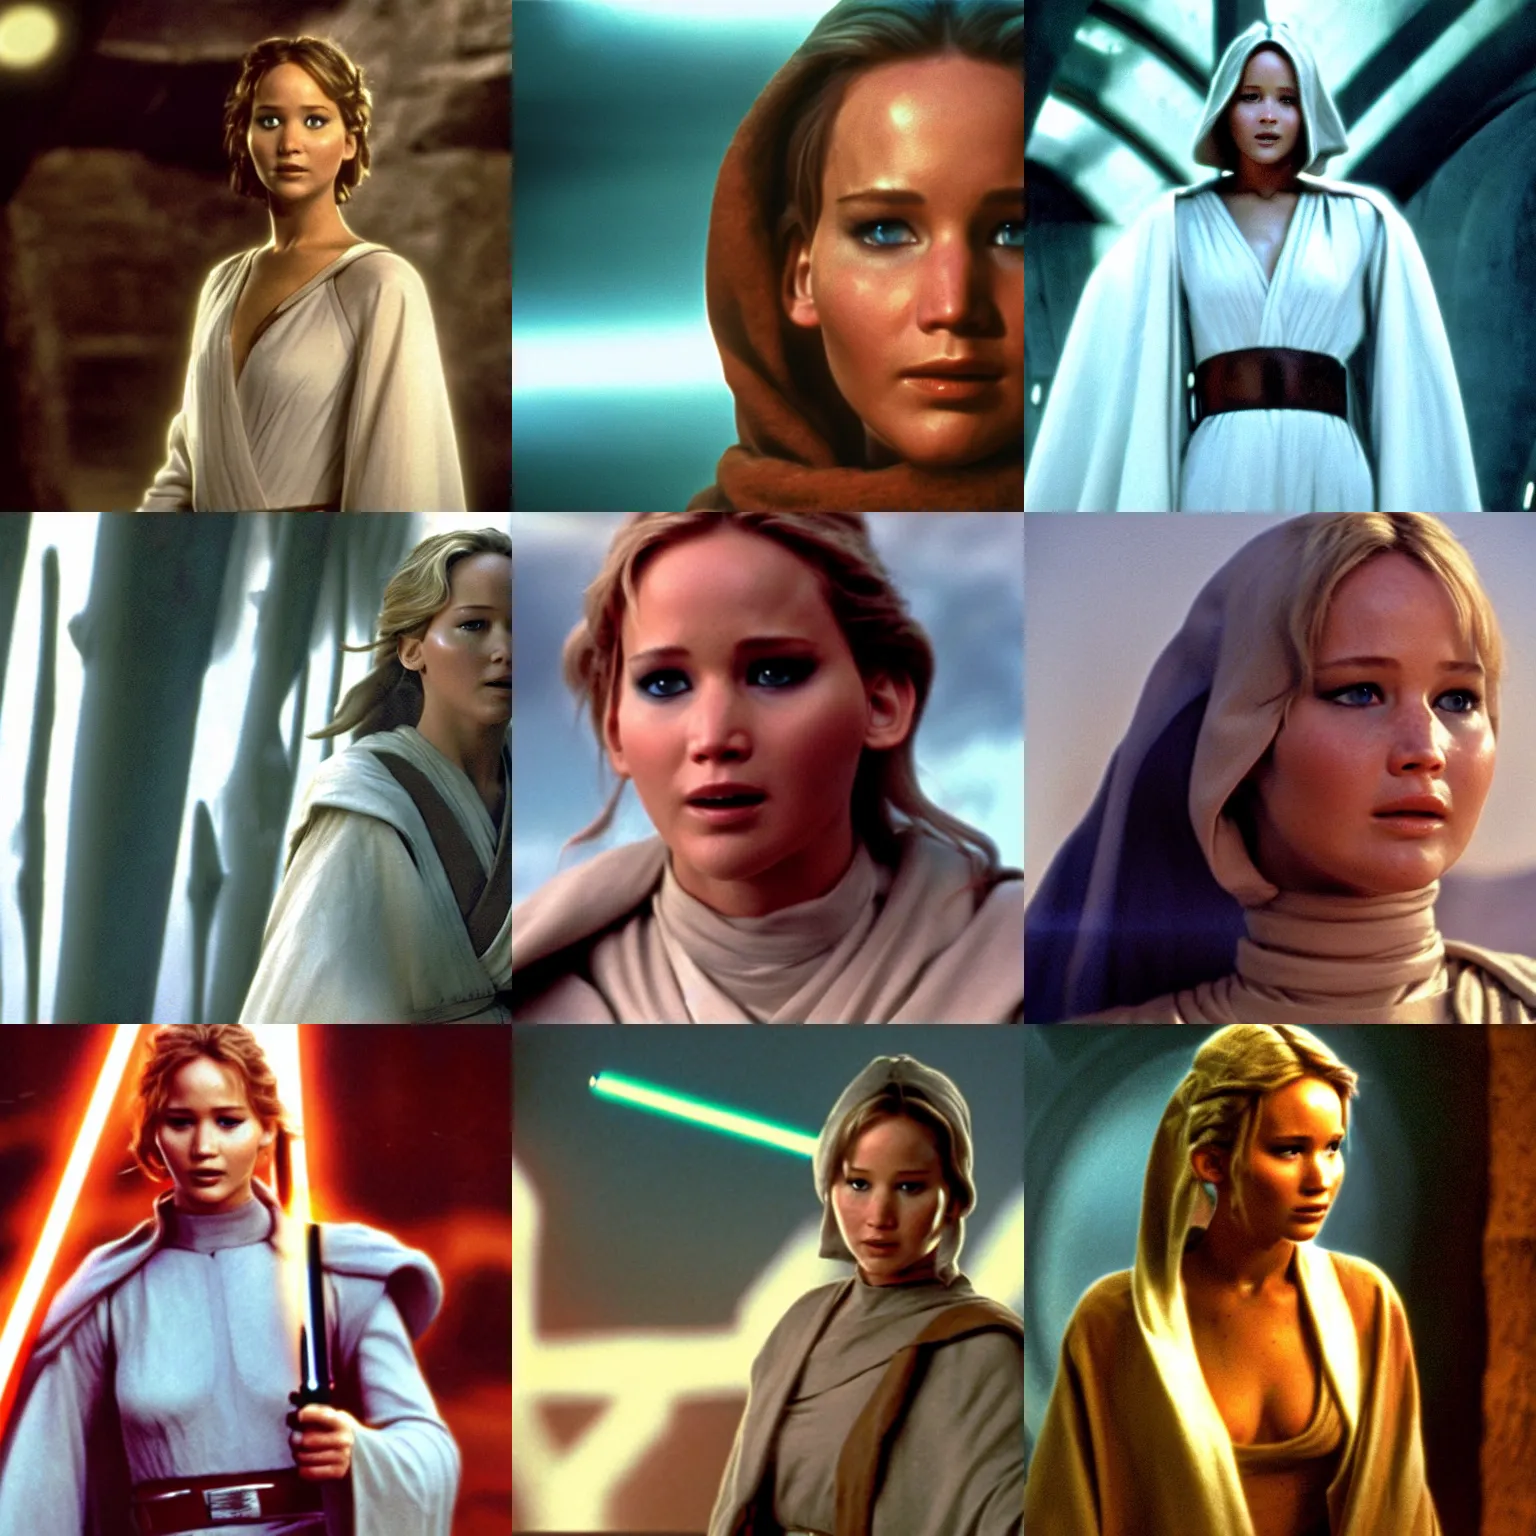 Prompt: Jennifer Lawrence as Jedi Knight Obi-Wan Kenobi, film still from the original Star Wars